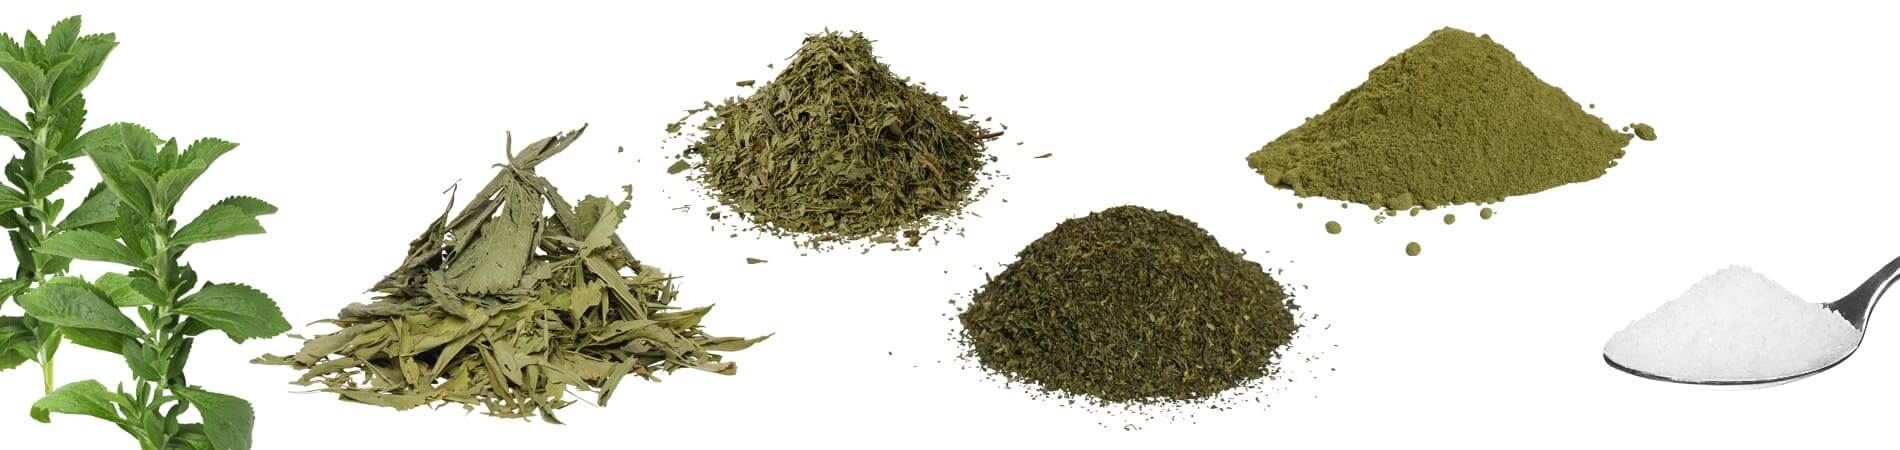 Welche Inhaltsstoffe sind in der Stevia Pflanze enthalten?